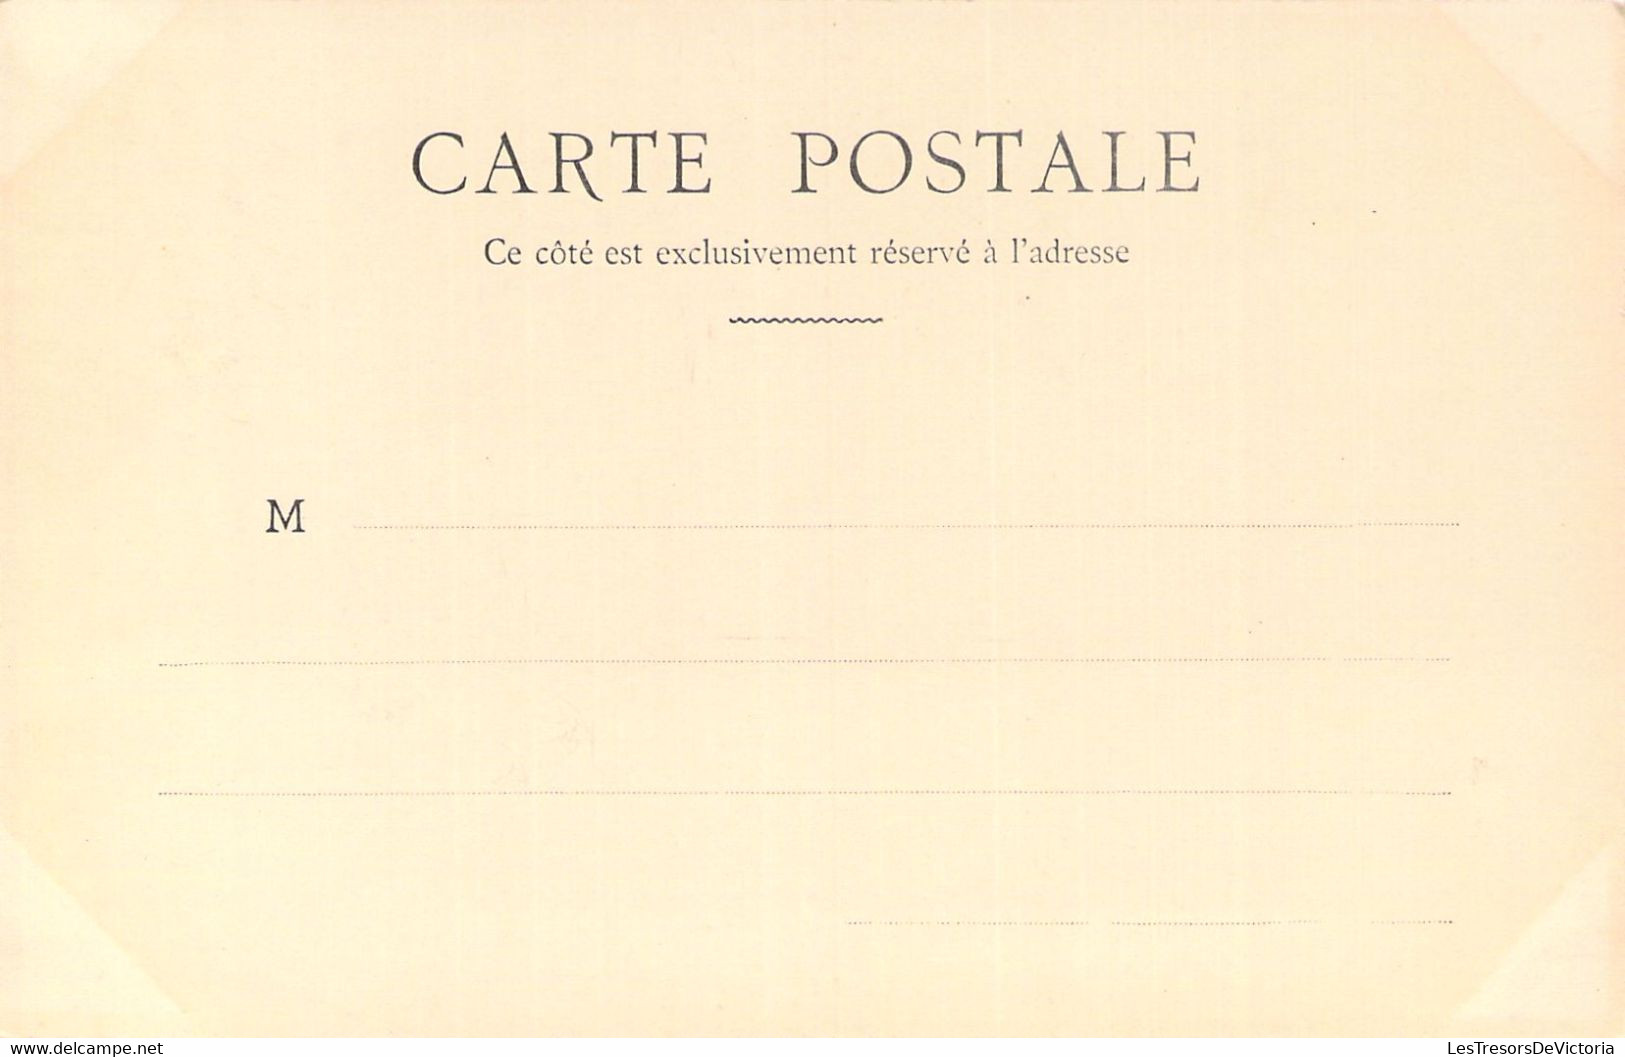 THEATRE - L'AIGLON - Sarah Bernhardt - Le Duc De Reichstadt Et L'Archiduchesse - Carte Postale Ancienne - Theater